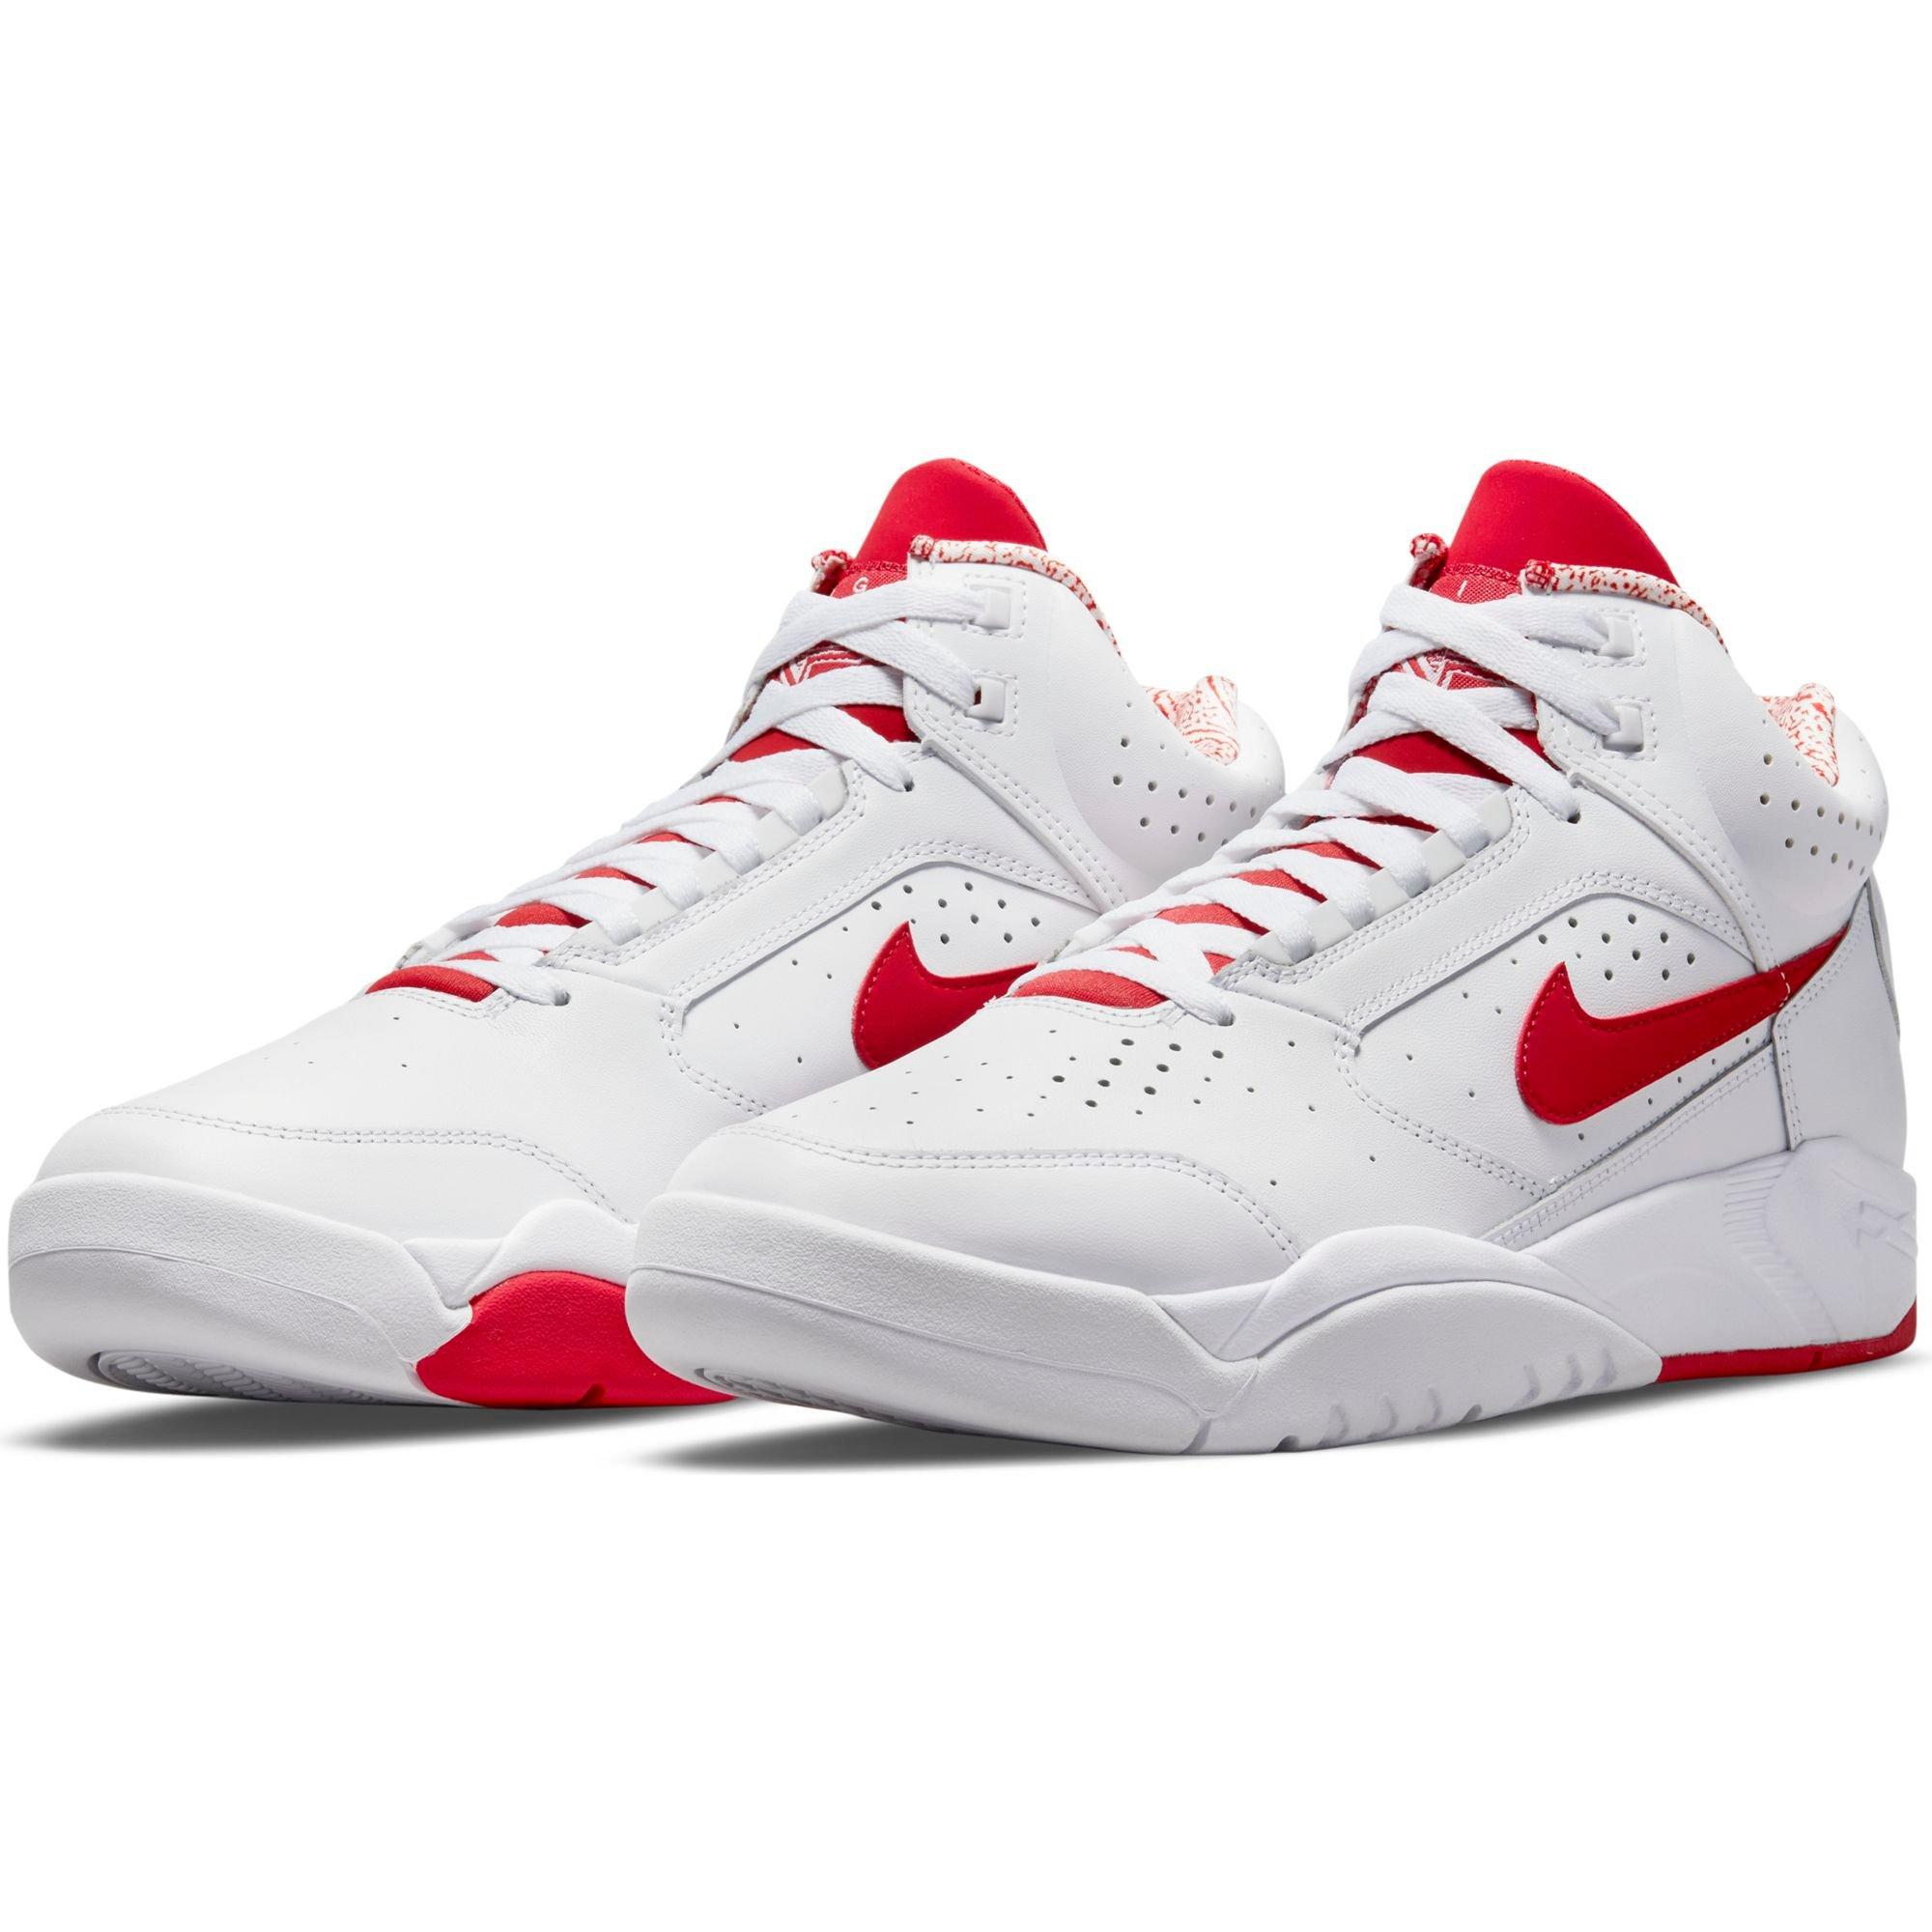 Van toepassing details baas Nike Air Flight Lite Mid "White/University Red" Men's Shoe